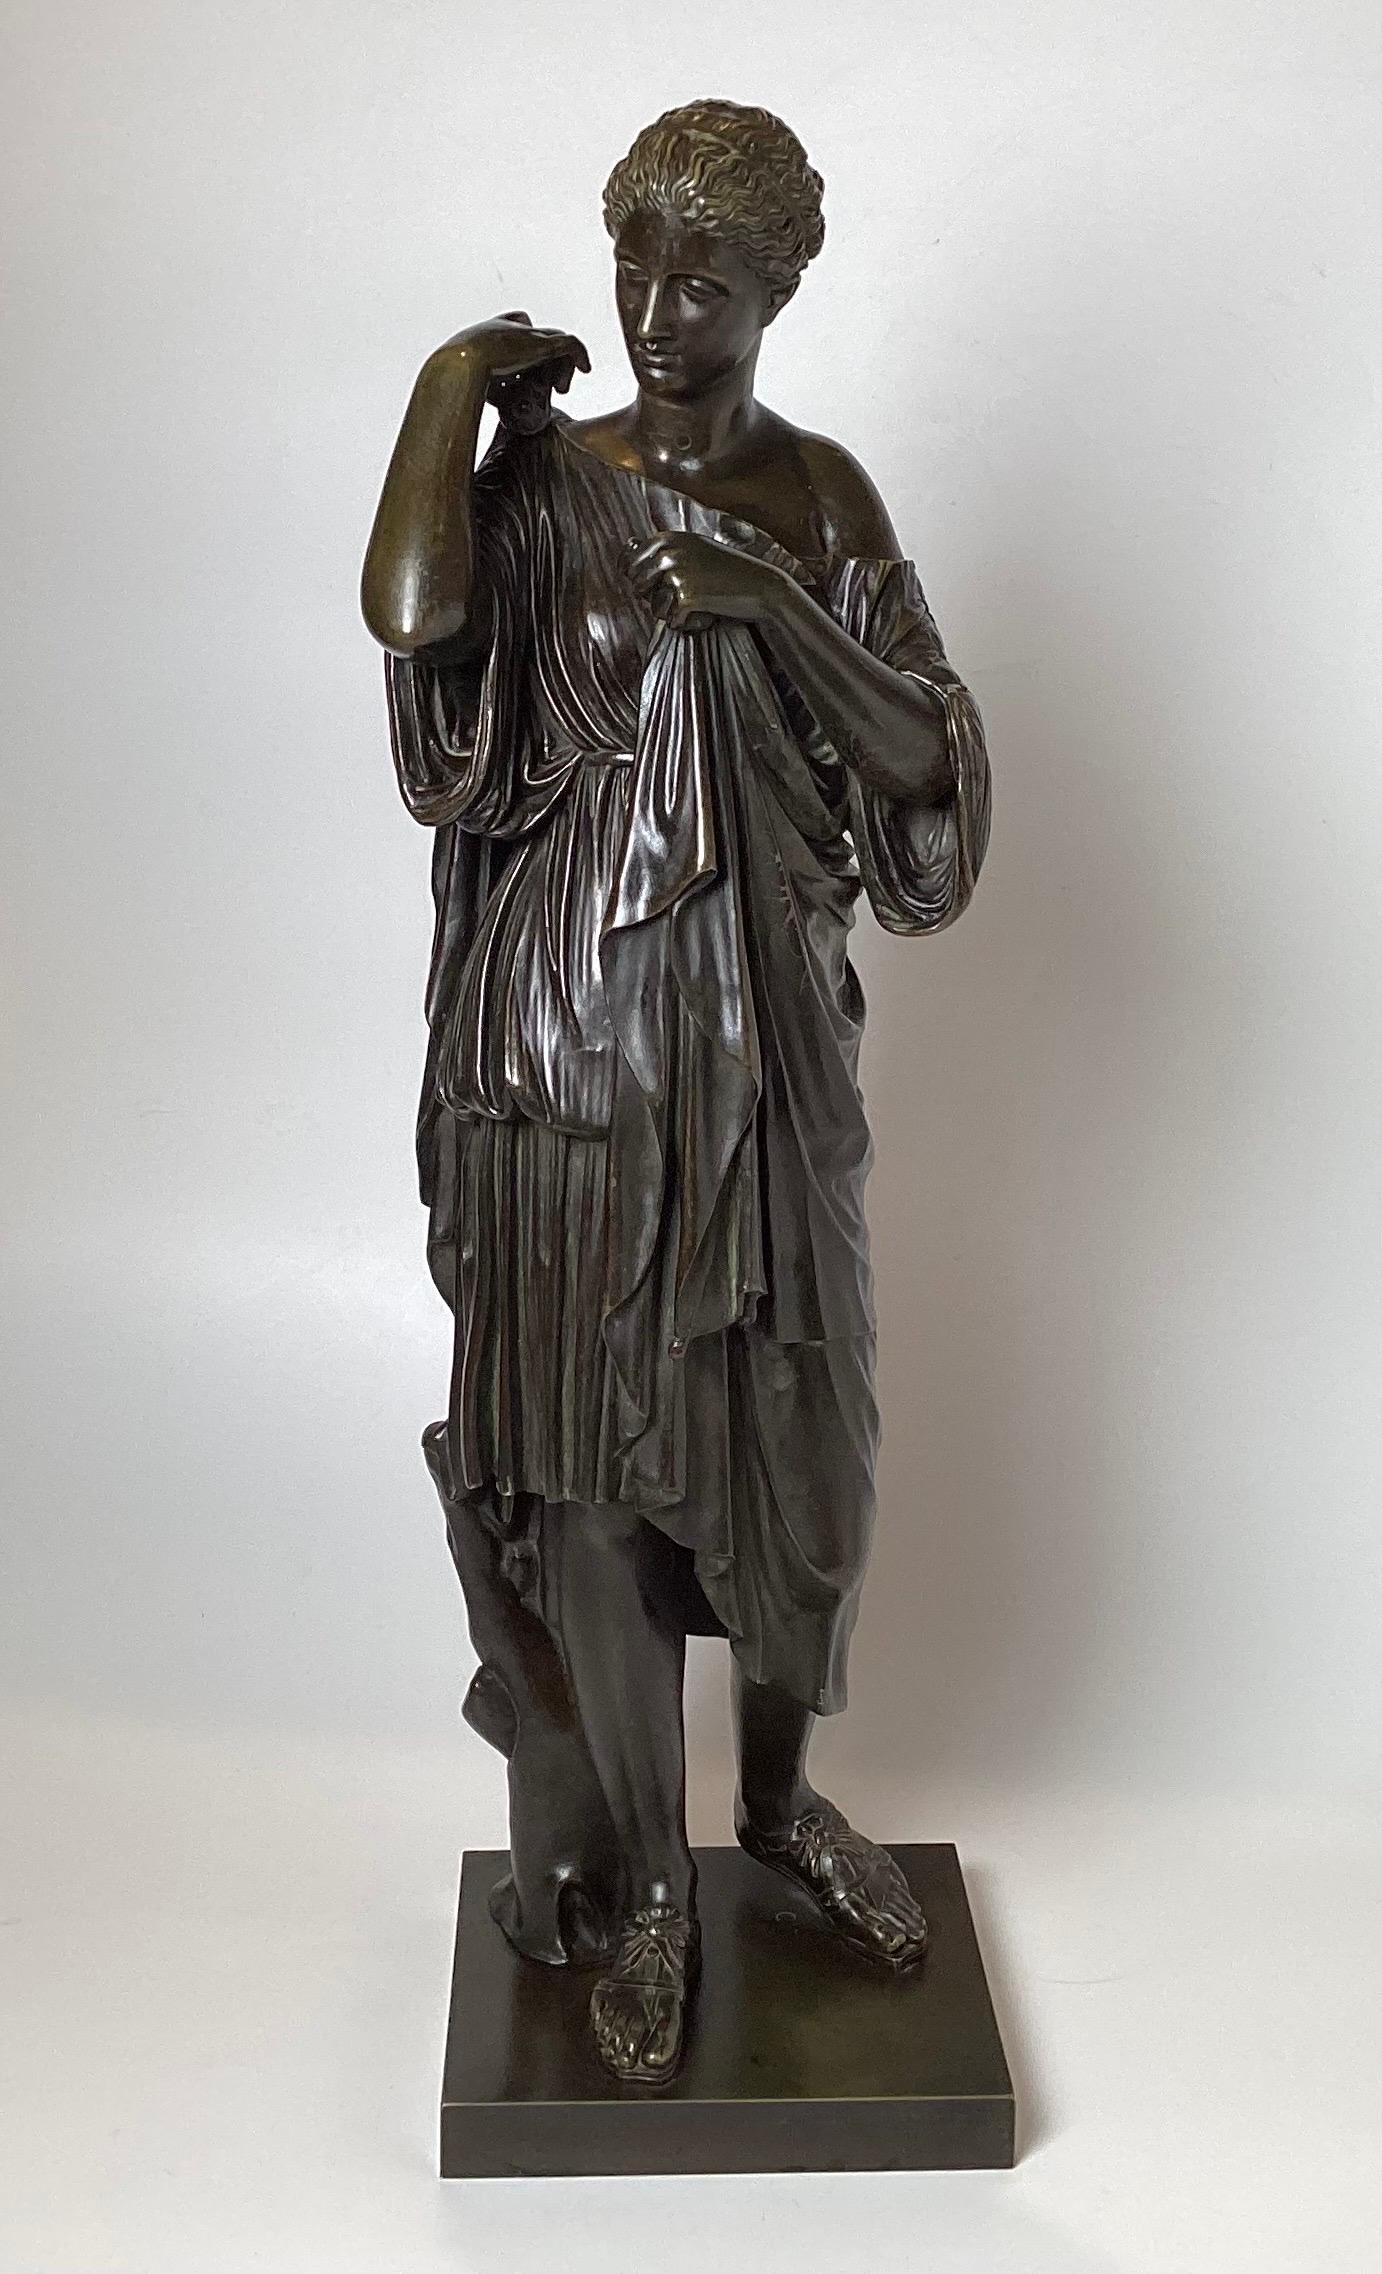 Patinierter Bronzeguss, klassische weibliche Bronzefigur einer drapierten Frau, signiert Delafontaine. Die Bronzefabrik Delafontaine wurde Ende des 18. Jahrhunderts von Jean-Baptiste-Maximilien Delafontaine (1750 - 1820) gegründet.